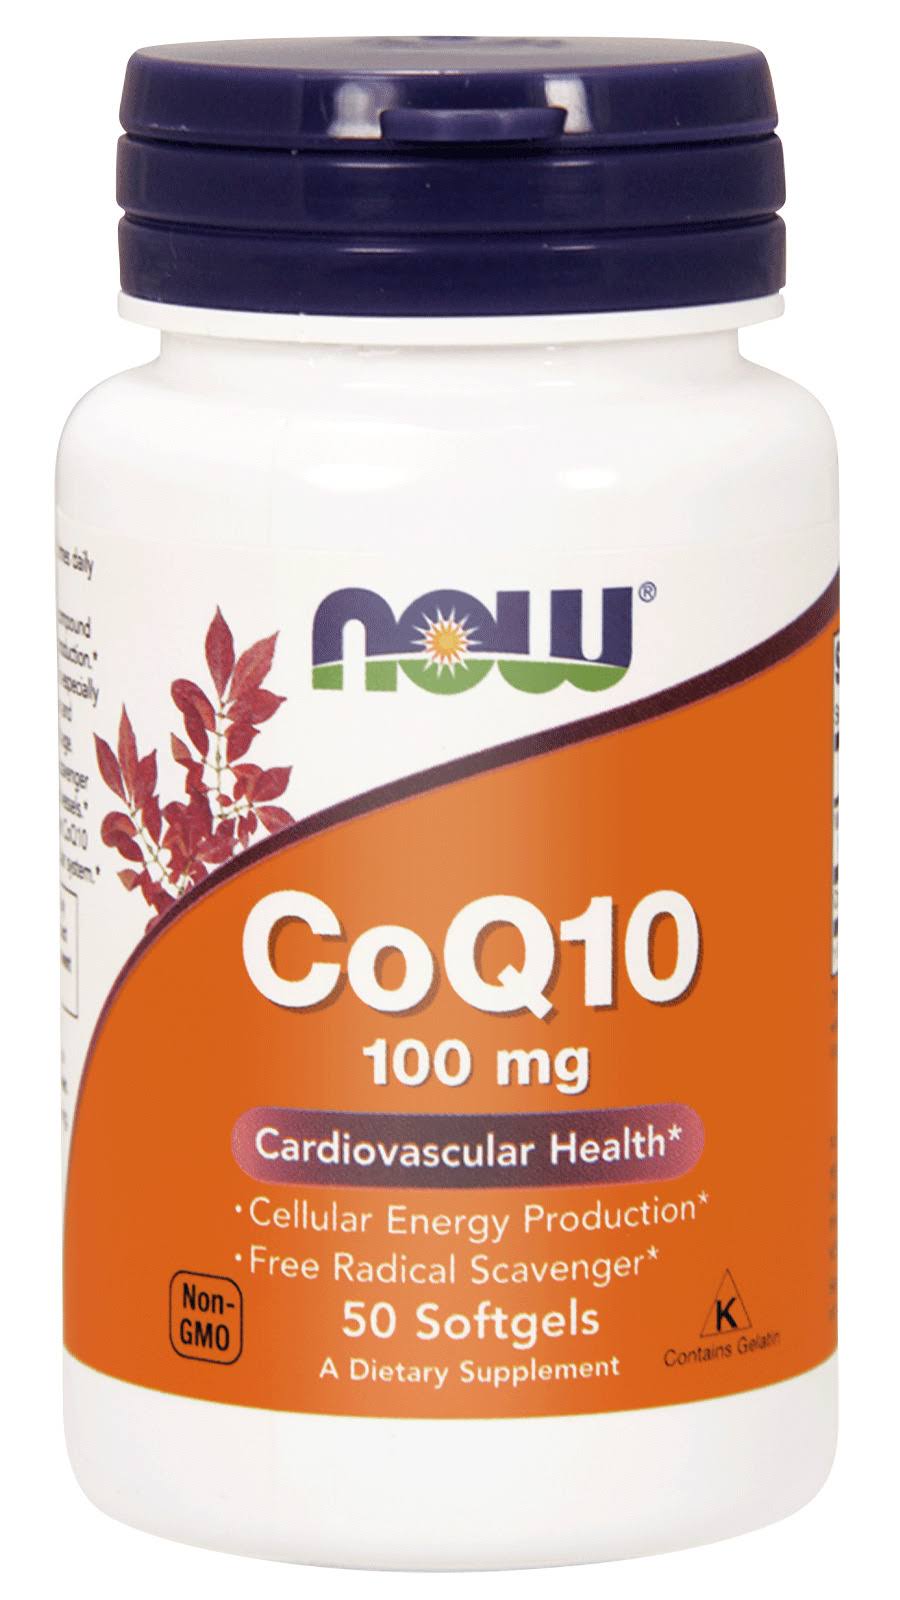 Now Foods - Coq10 - 100mg, 50 Softgels